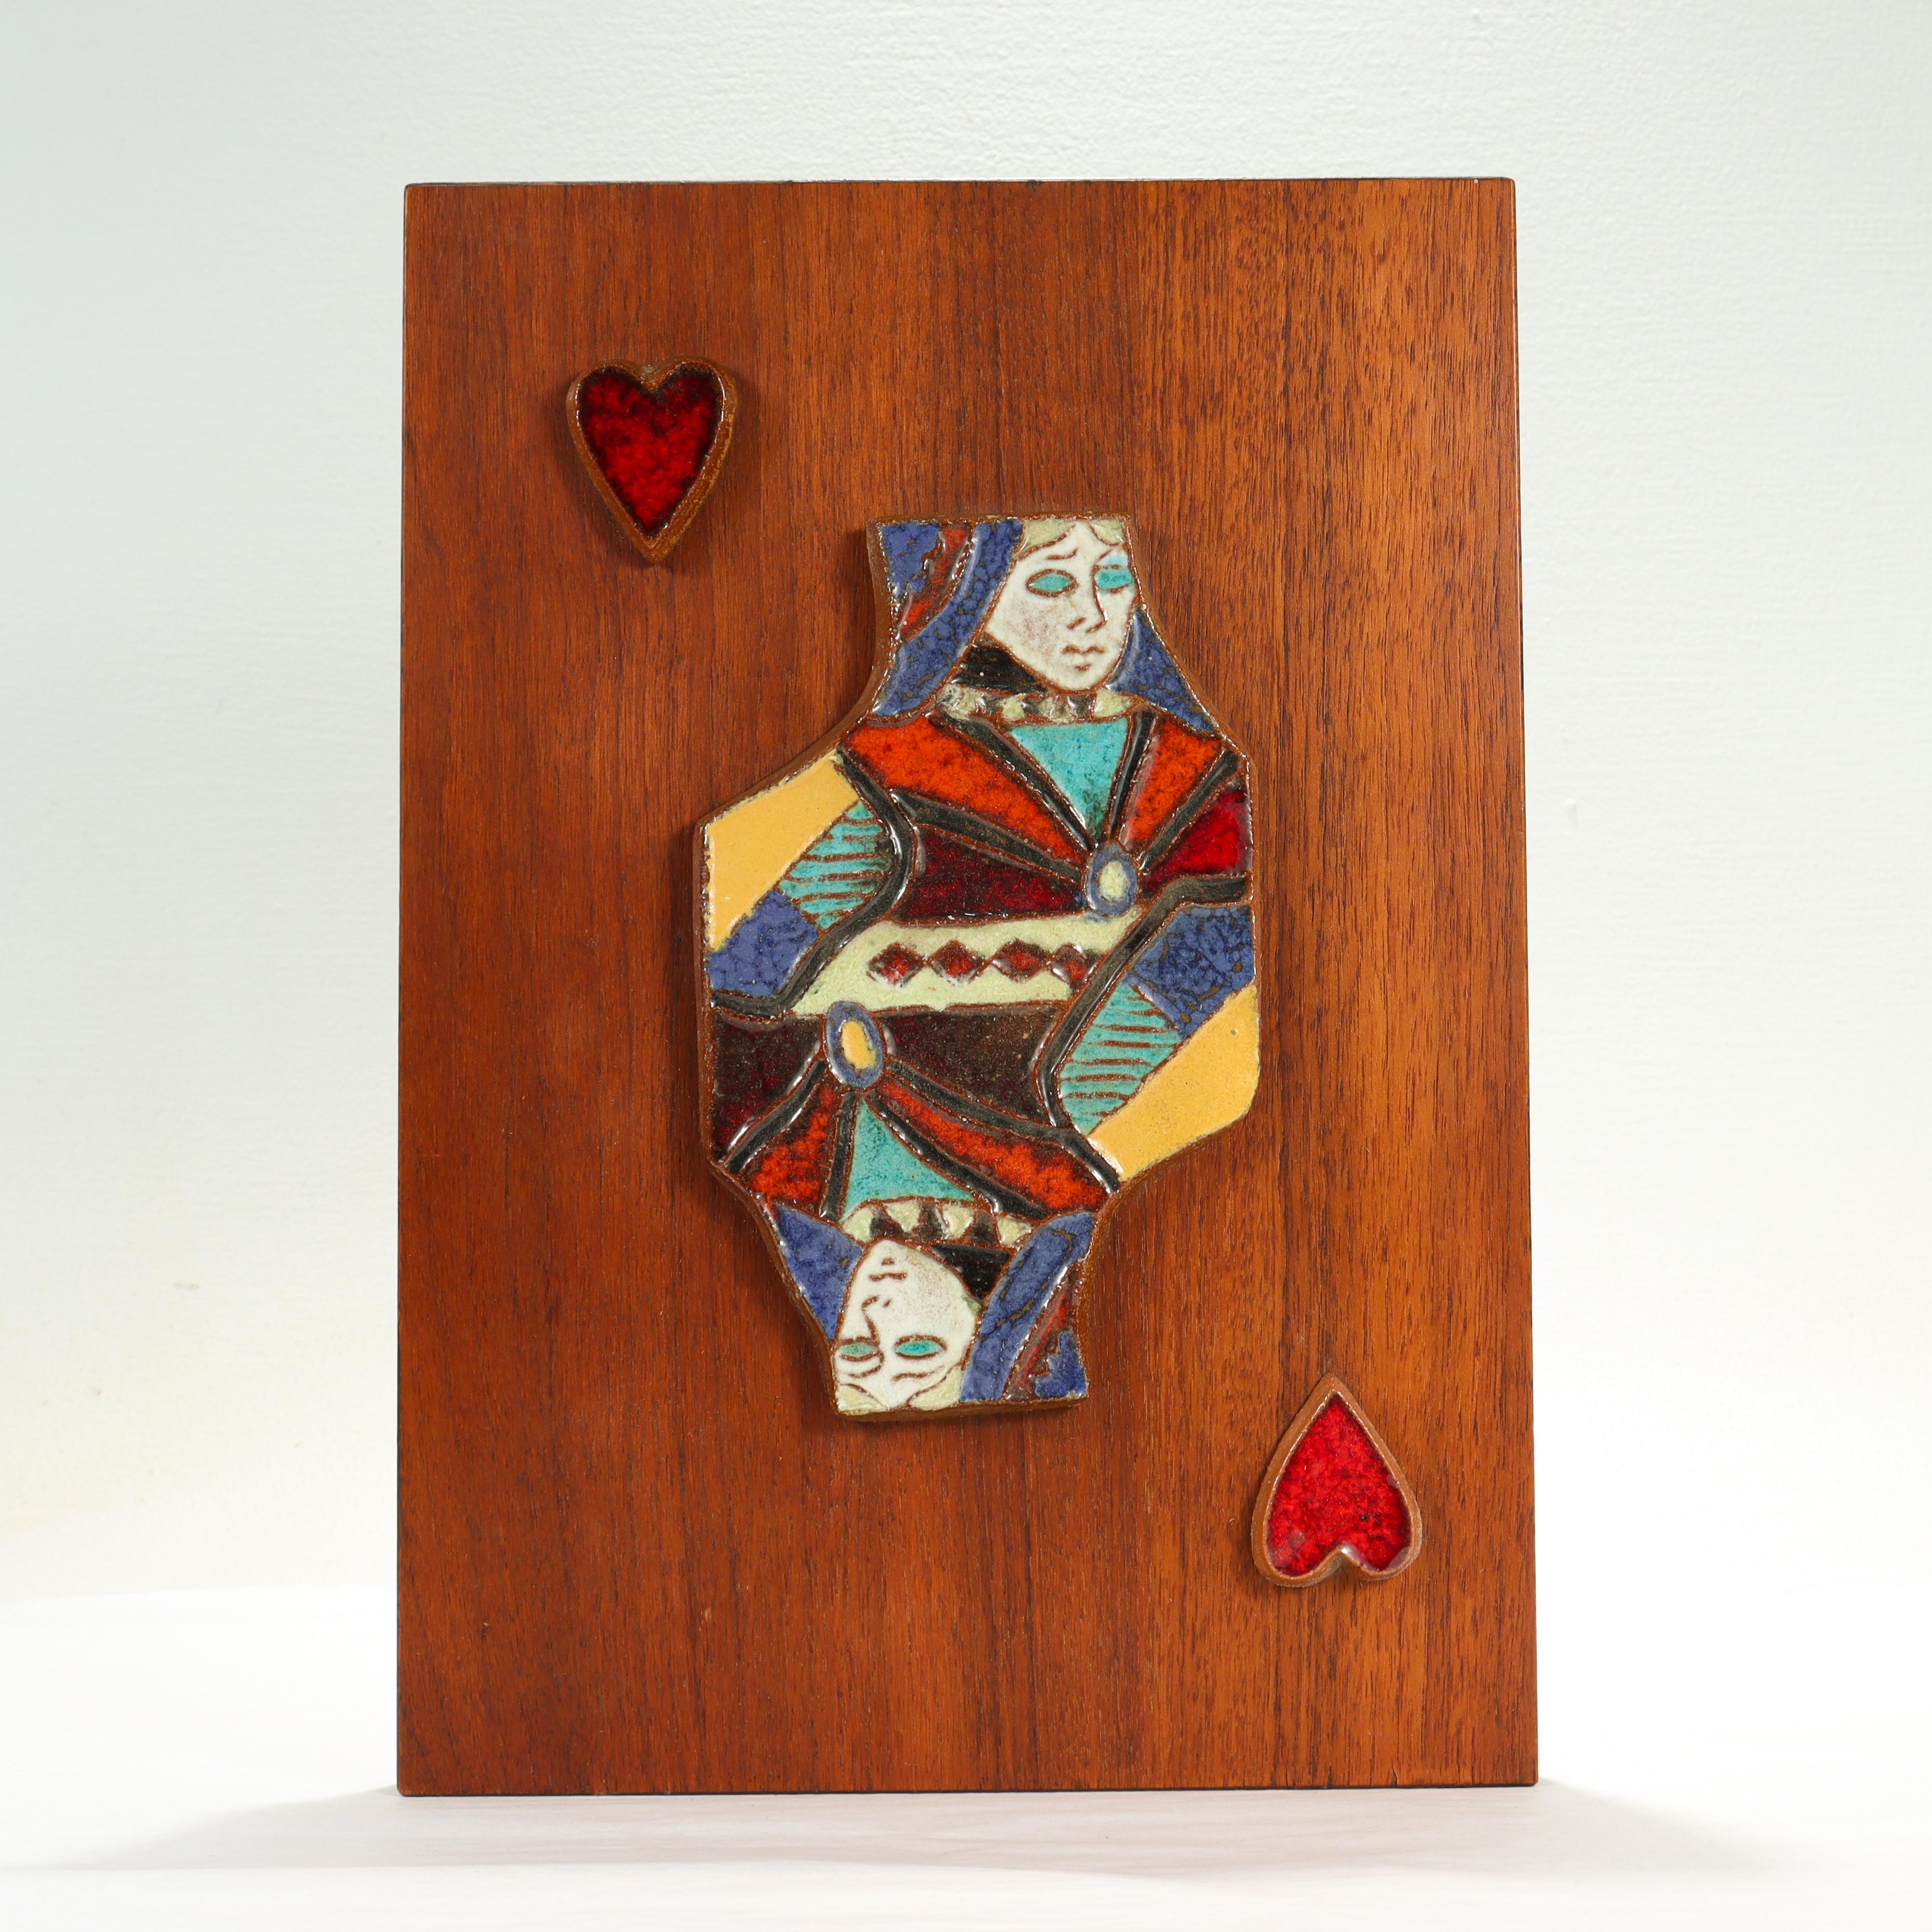 Eine schöne Mid-Century Modern Keramikfliese.

Von Harris Strong. 

Mit einer Terrakotta-Keramikfliese, die die Herzkönigin darstellt, montiert auf einer mit Teakholz furnierten Platte.

Einfach ein großartiges Stück für jedes Zimmer aus der